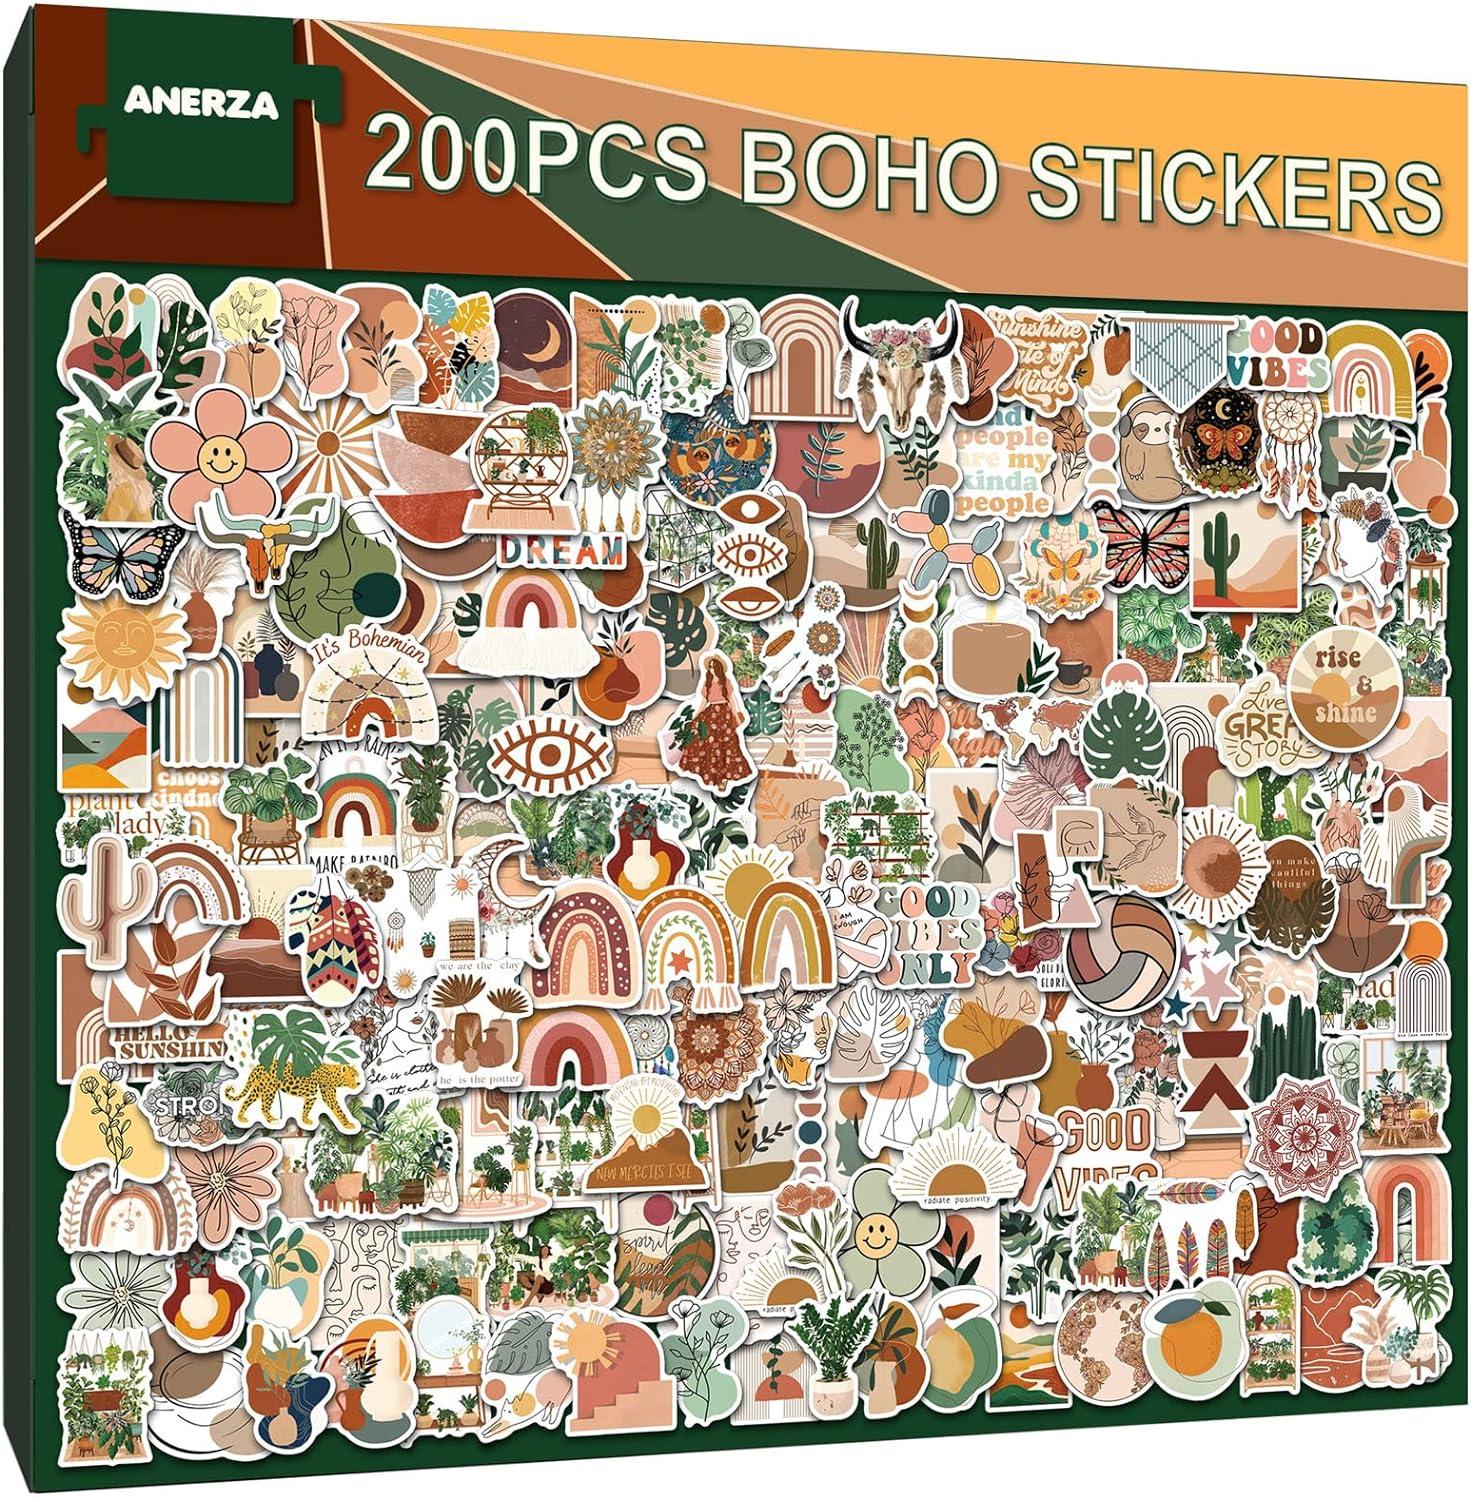 Aesthetic Boho sticker pack - Bohemian Art - Sticker